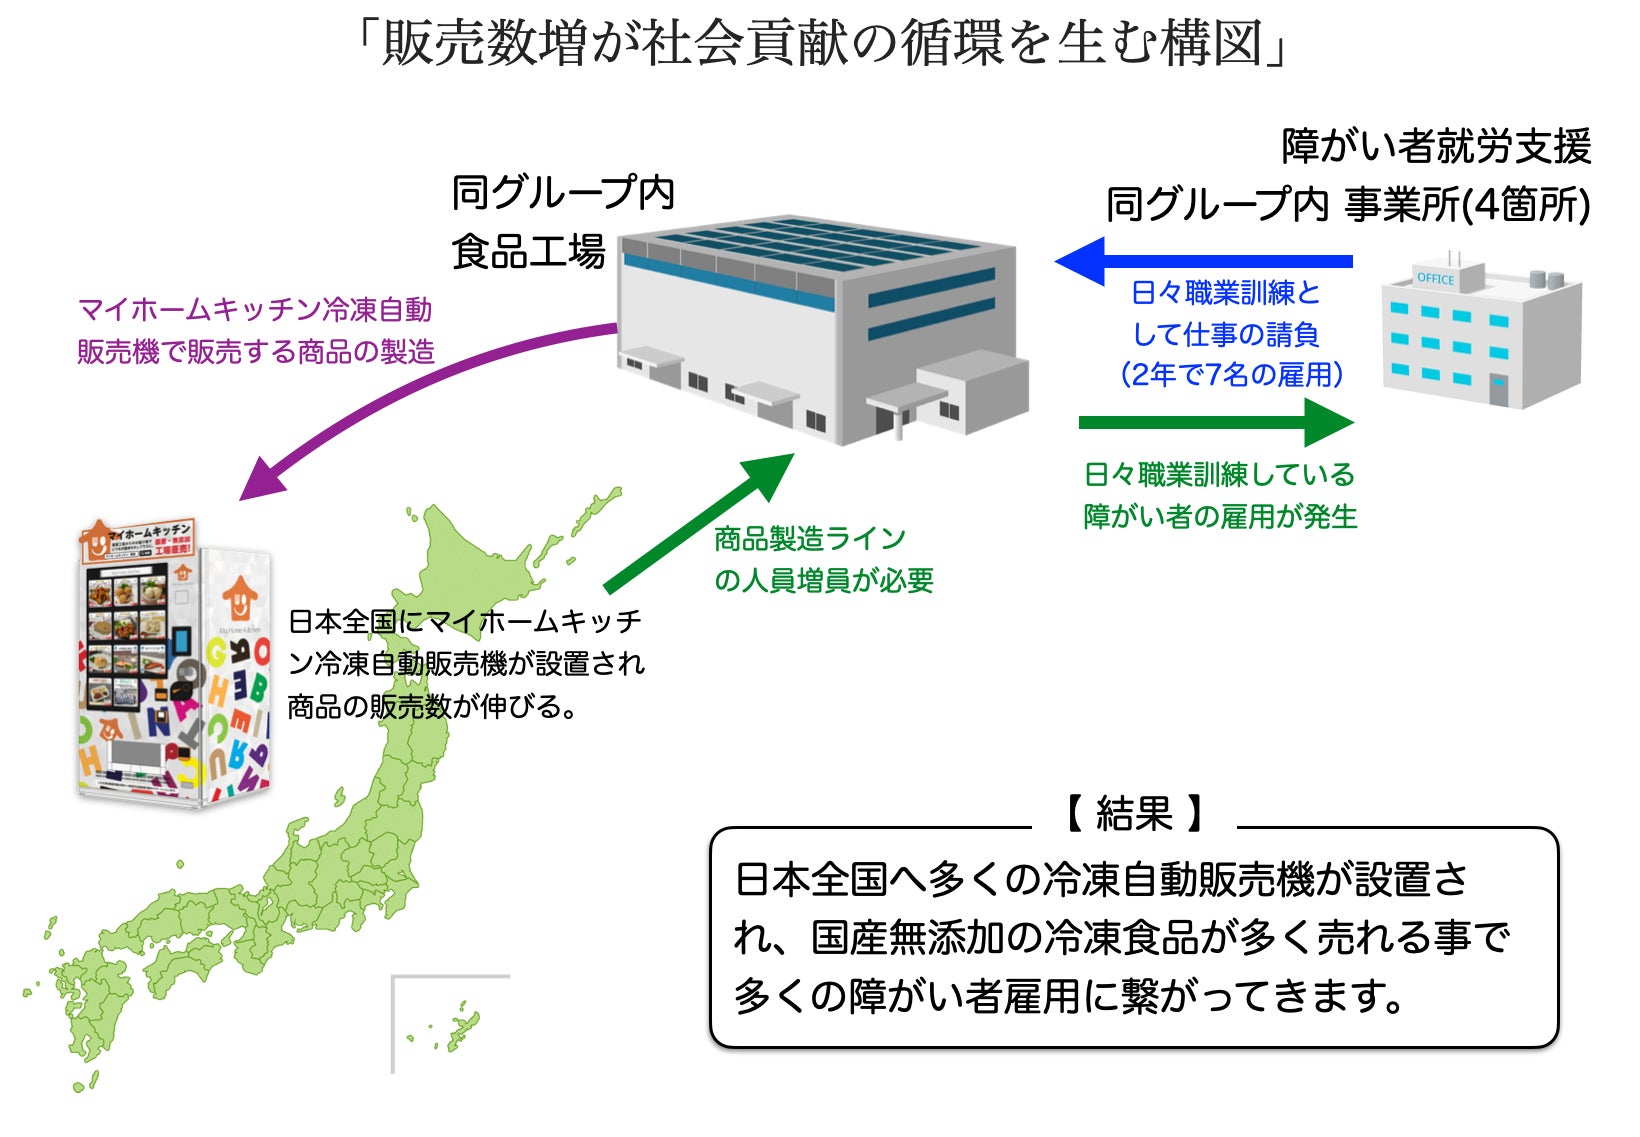 冷凍食品専門店の自動販売機を、福岡県内の4箇所に展開　商品製造は軽度障がいのあるスタッフも担当のサブ画像2